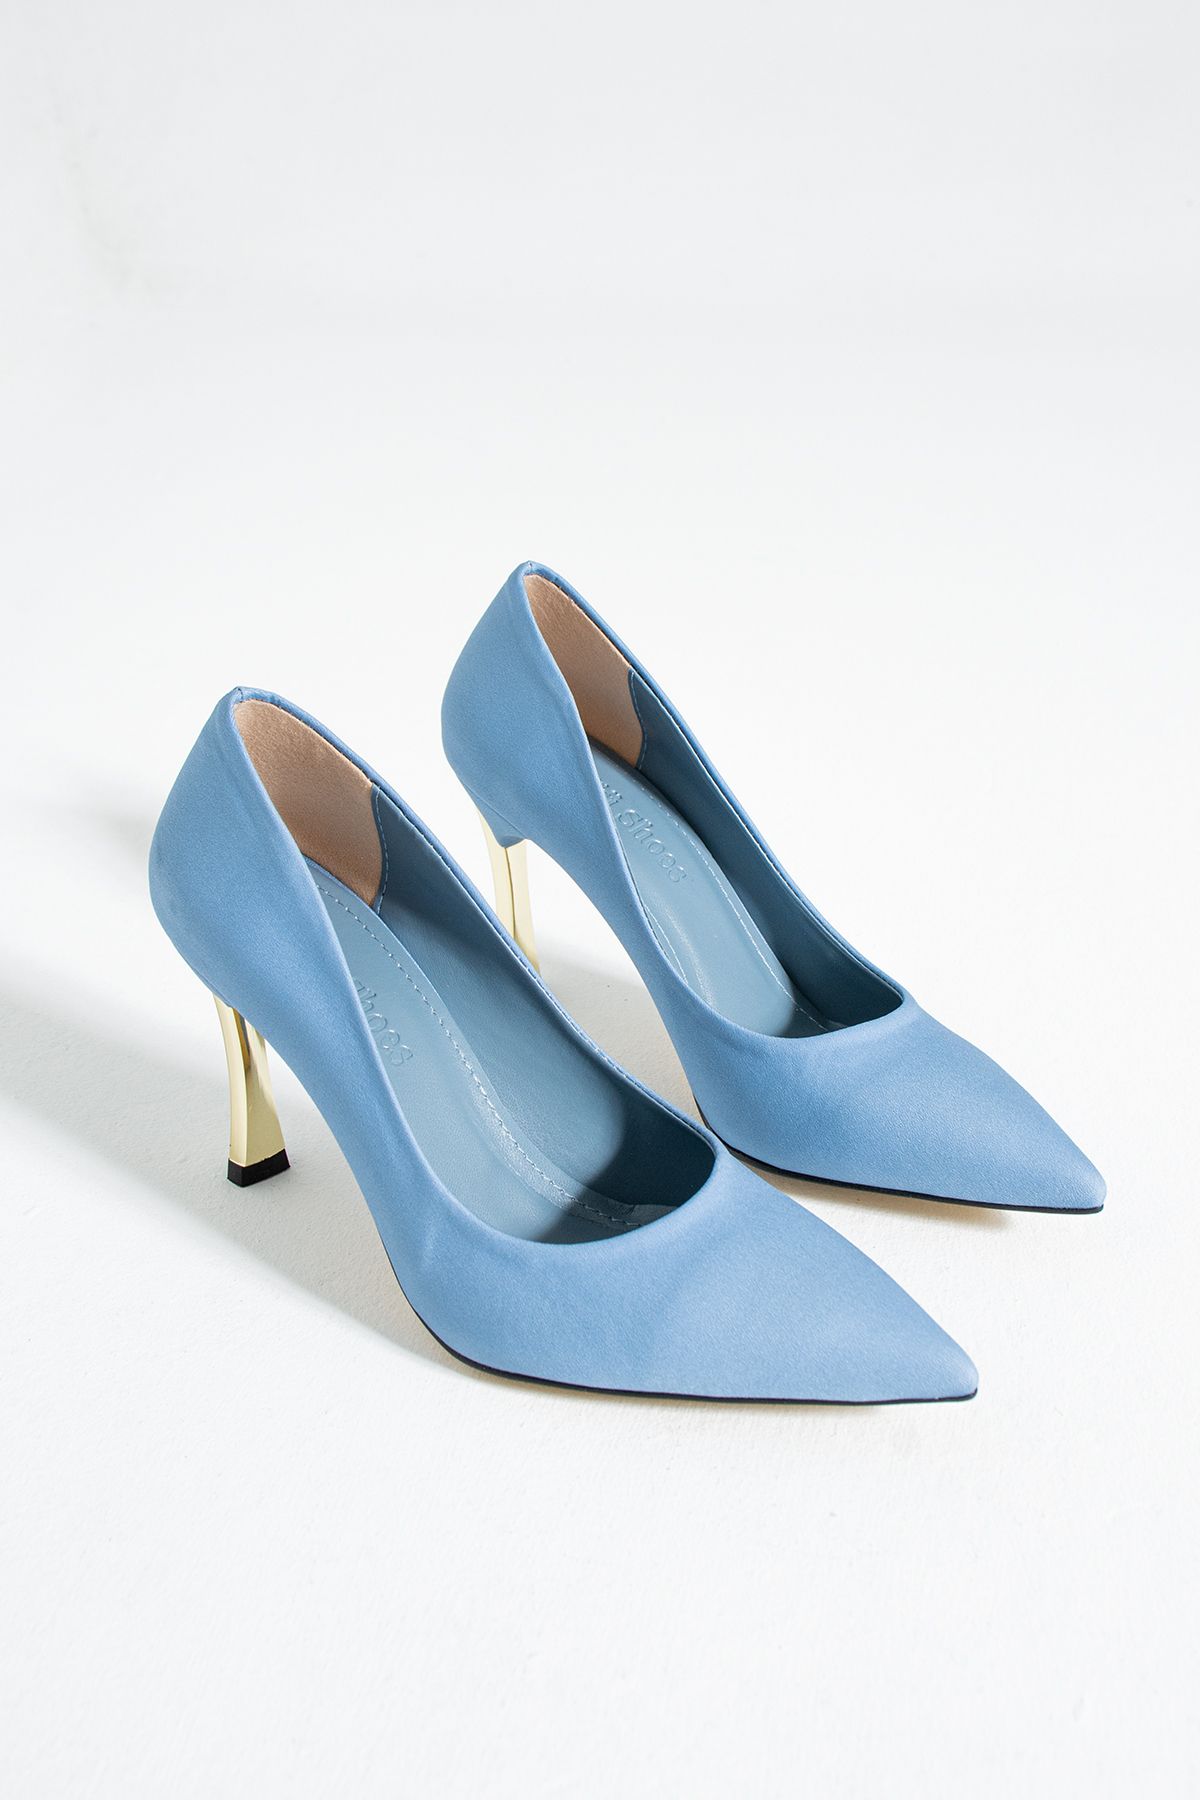 Güllü Shoes Kadın Topuklu Ayakkabı - Yüksek Topuklu Stiletto Rahat Şık Ve Ince Iş Ayakkabısı Açık Mavi 9 Cm